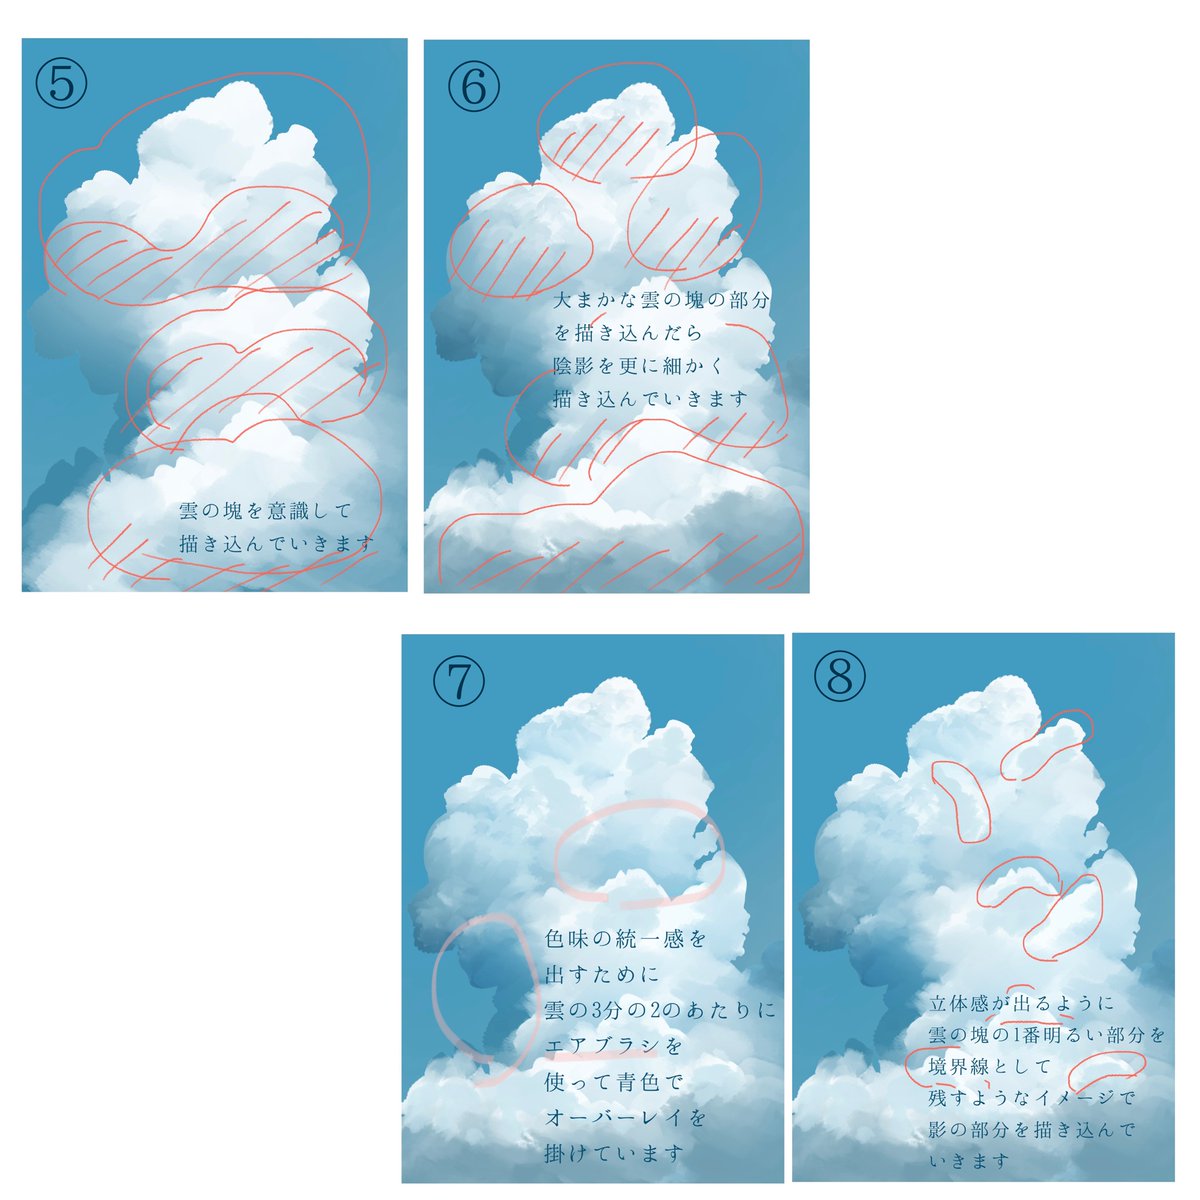 雲の描き方のメイキングです
※リプツリーに続きます

#イラストメイキング 